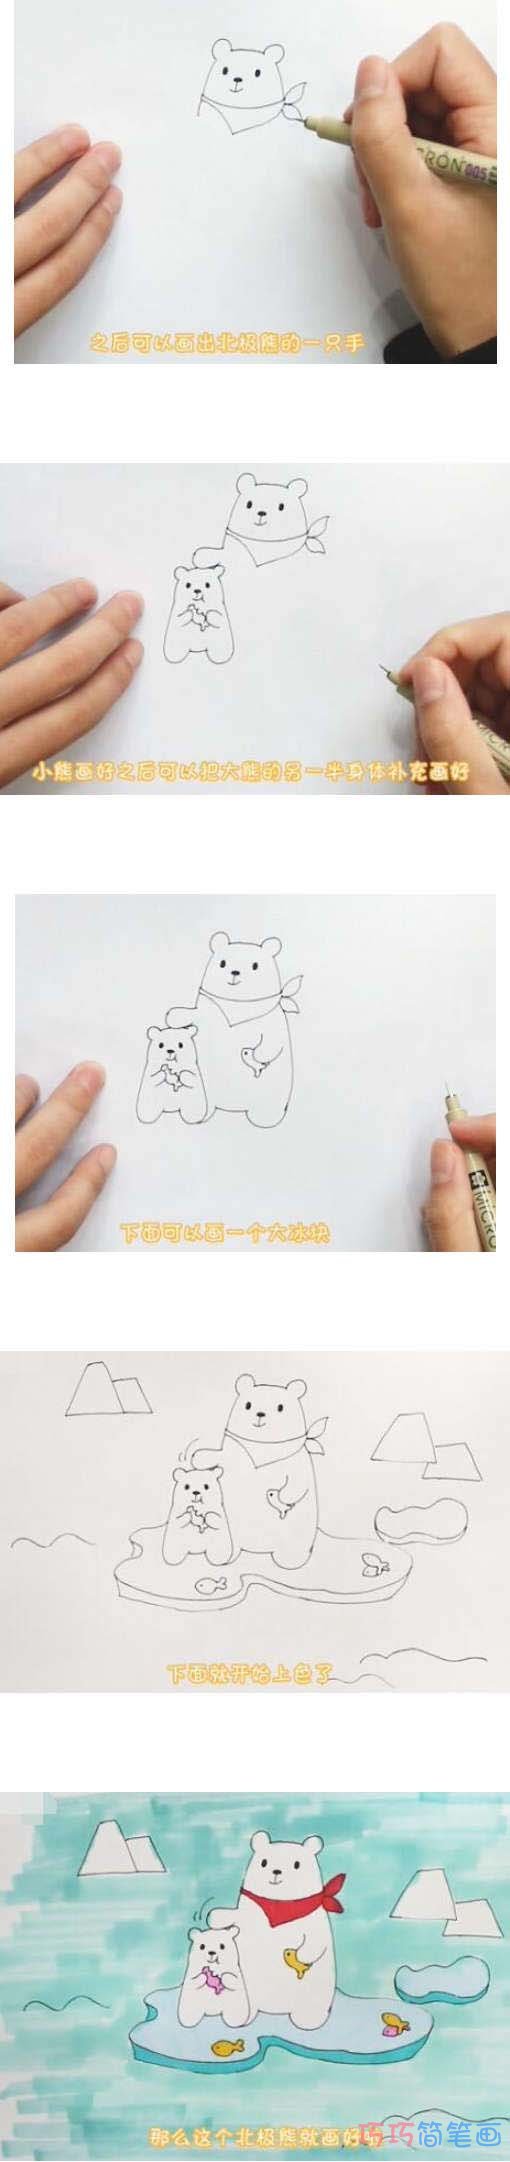 教你怎么画北极熊简笔画步骤教程涂颜色